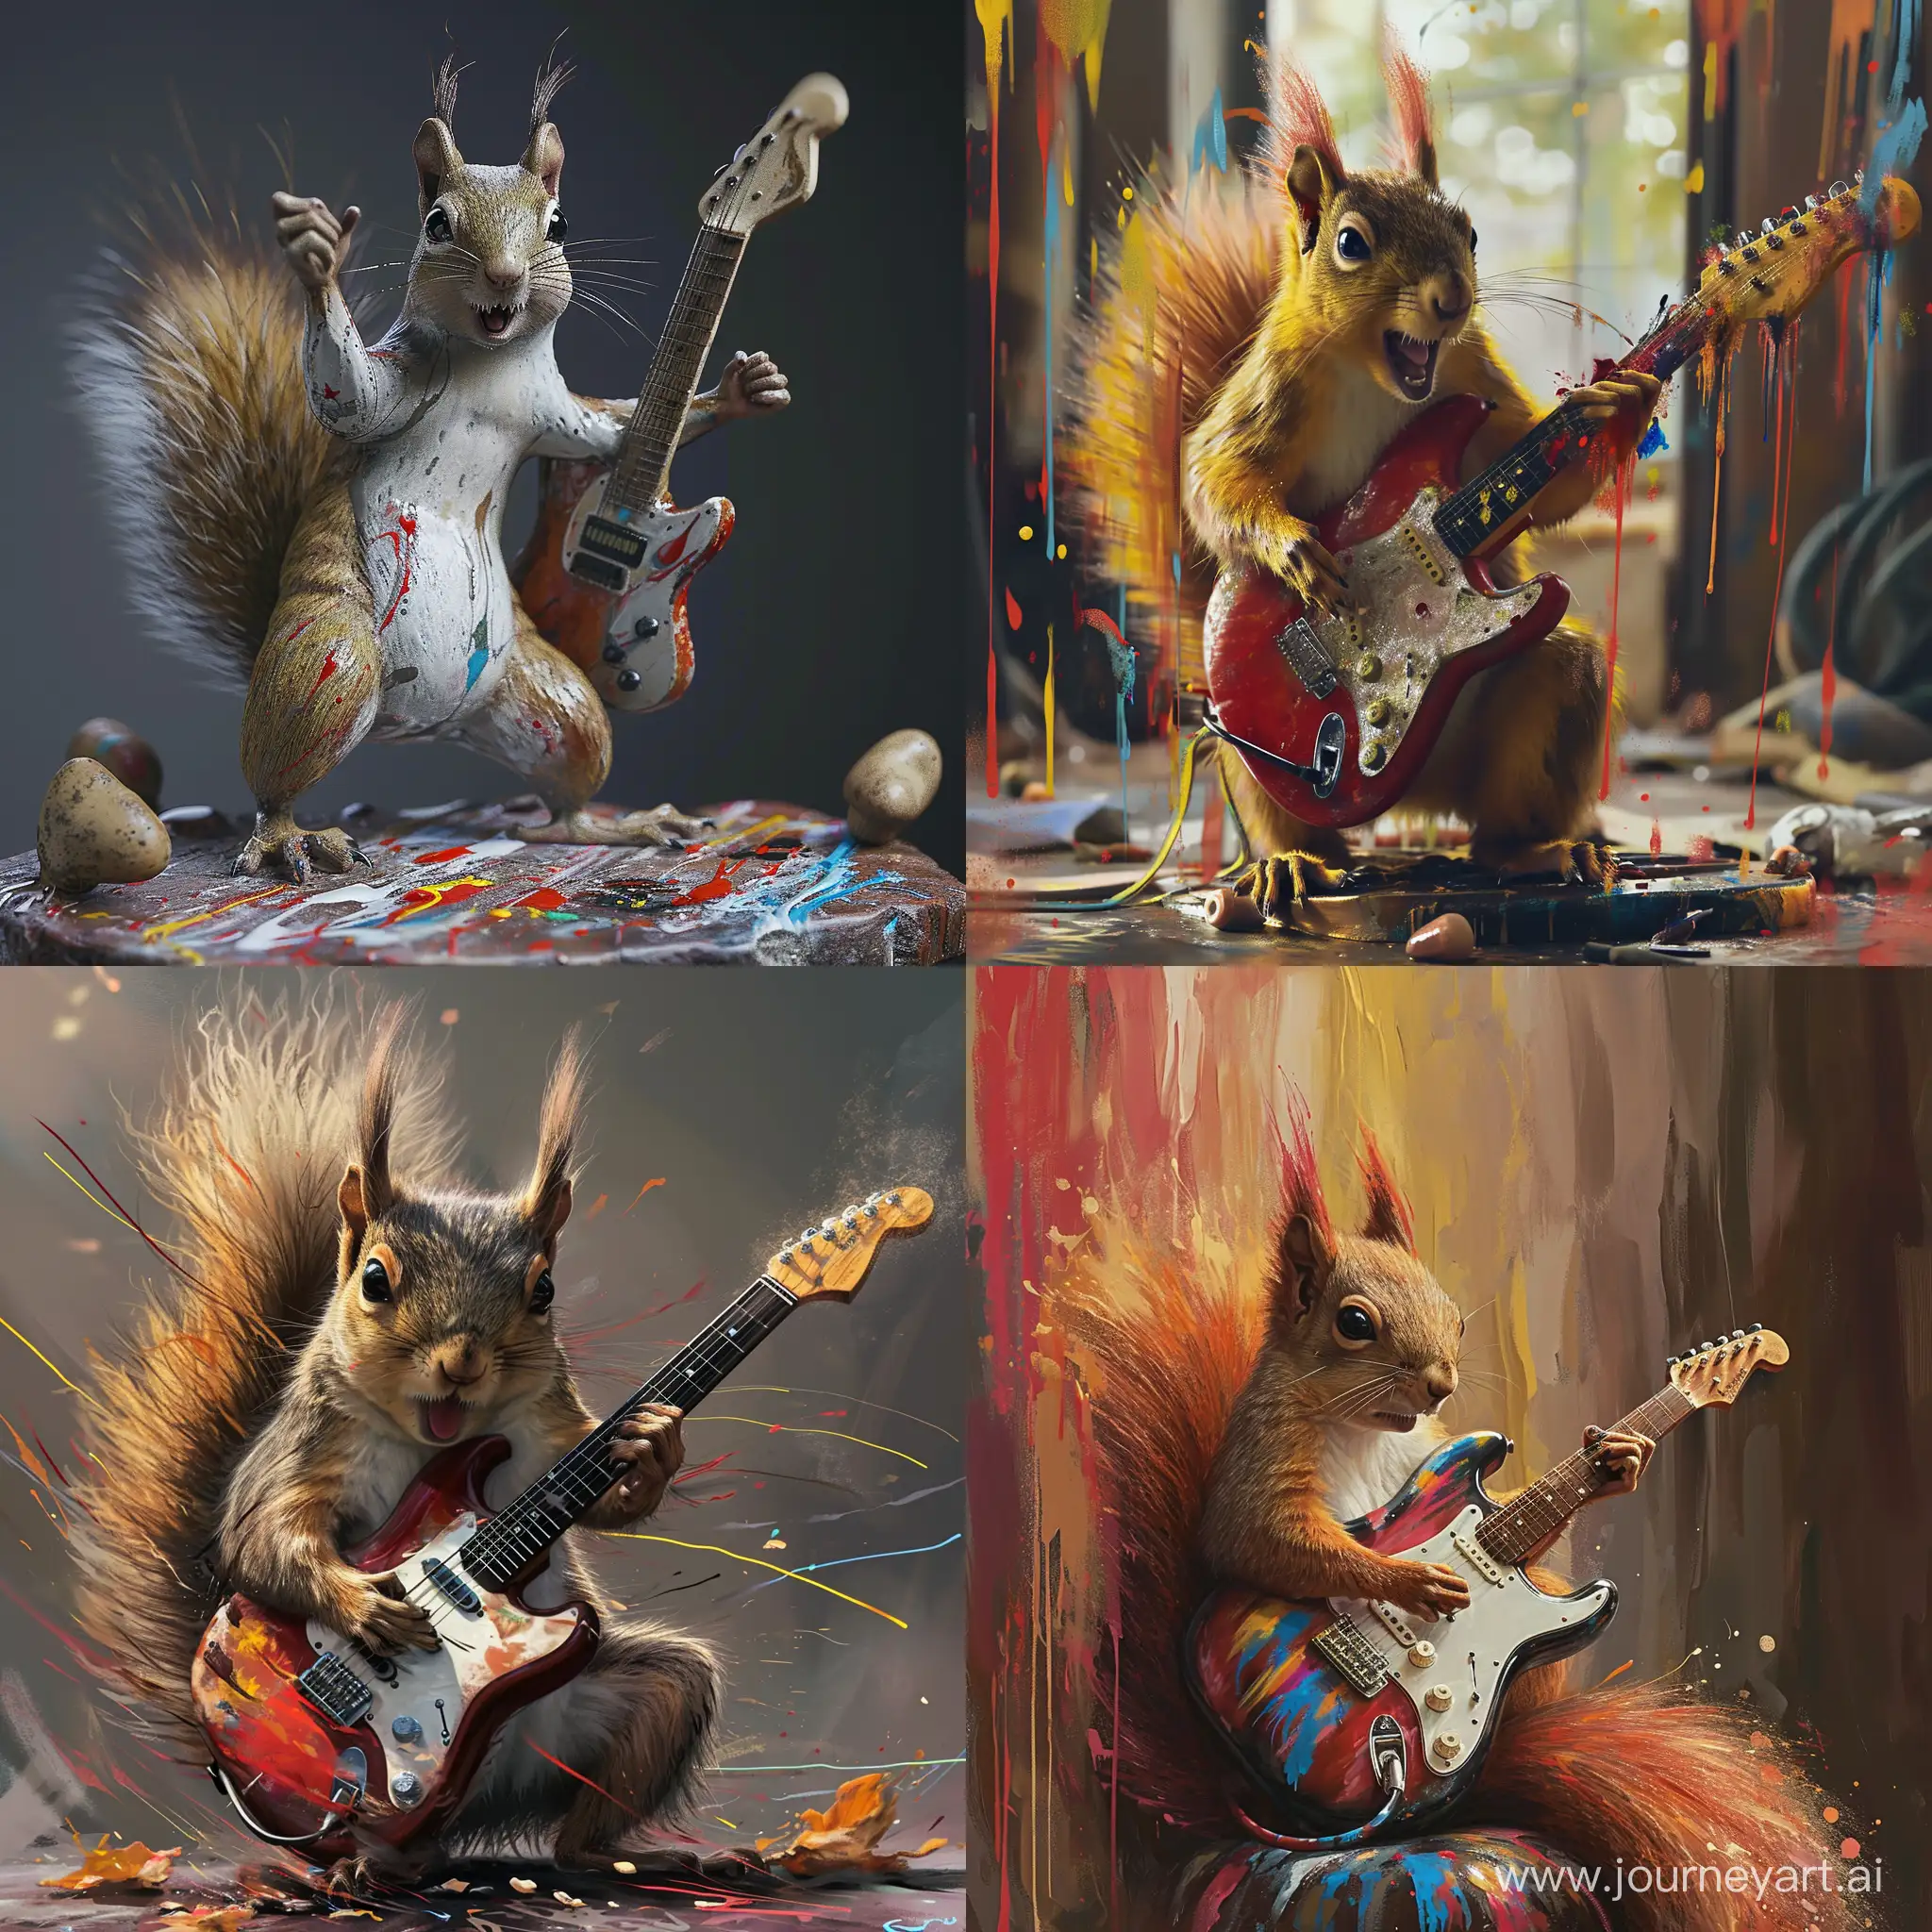 Squirrel rocker, Rock 'n' roll, streaks of paint, 8K, realism, --v 6